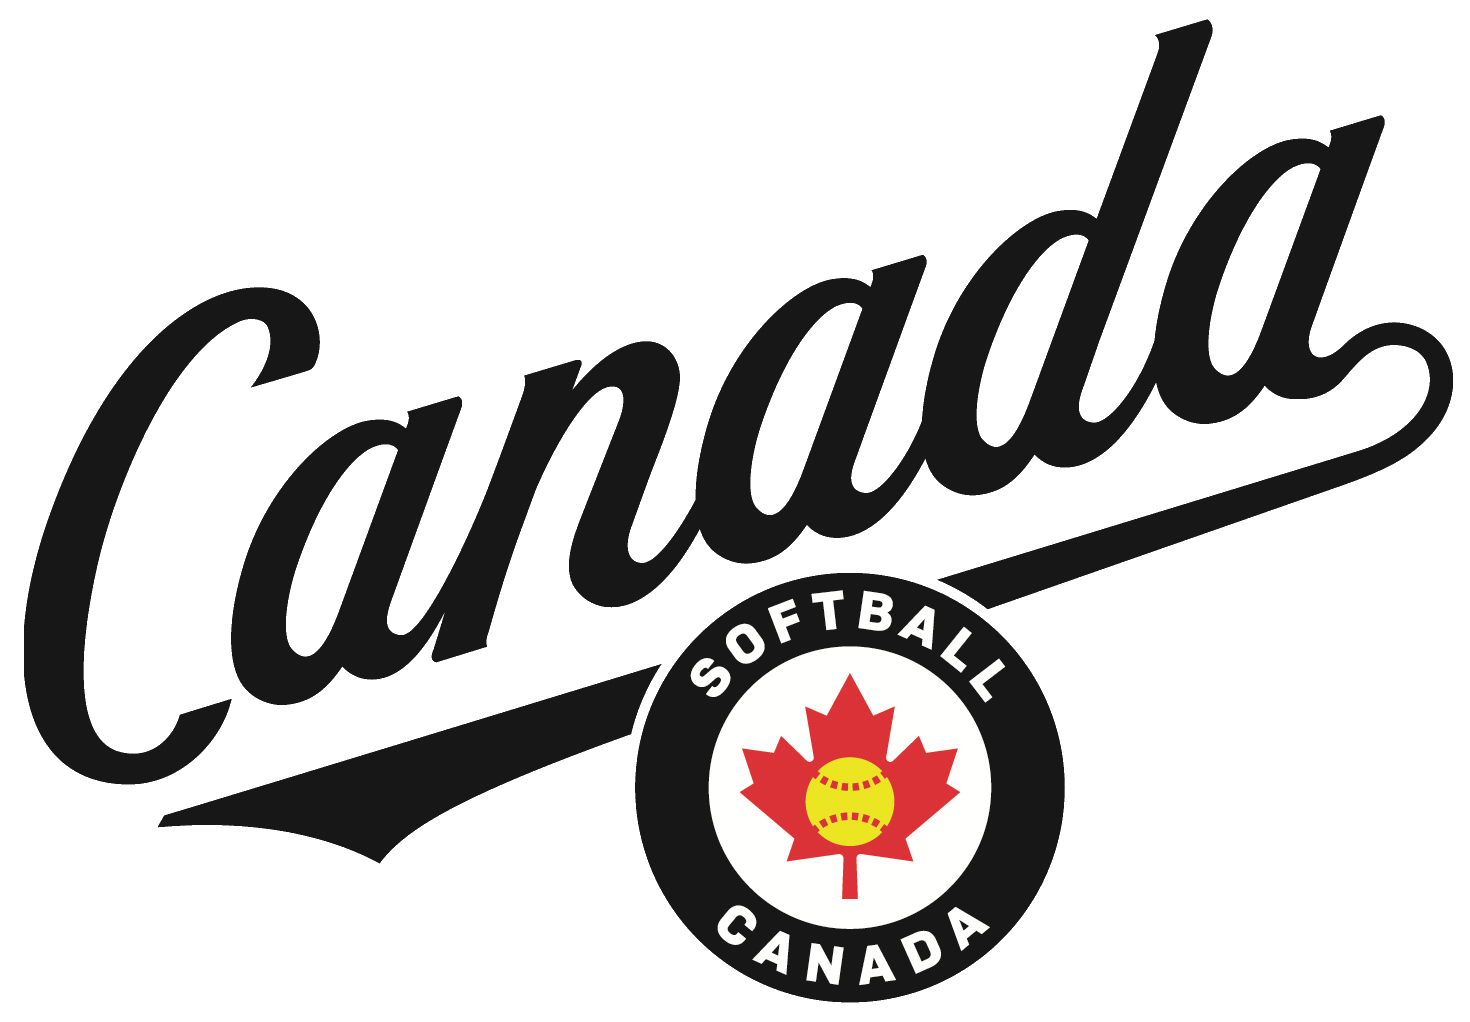 Softball Canada Script + Emblem